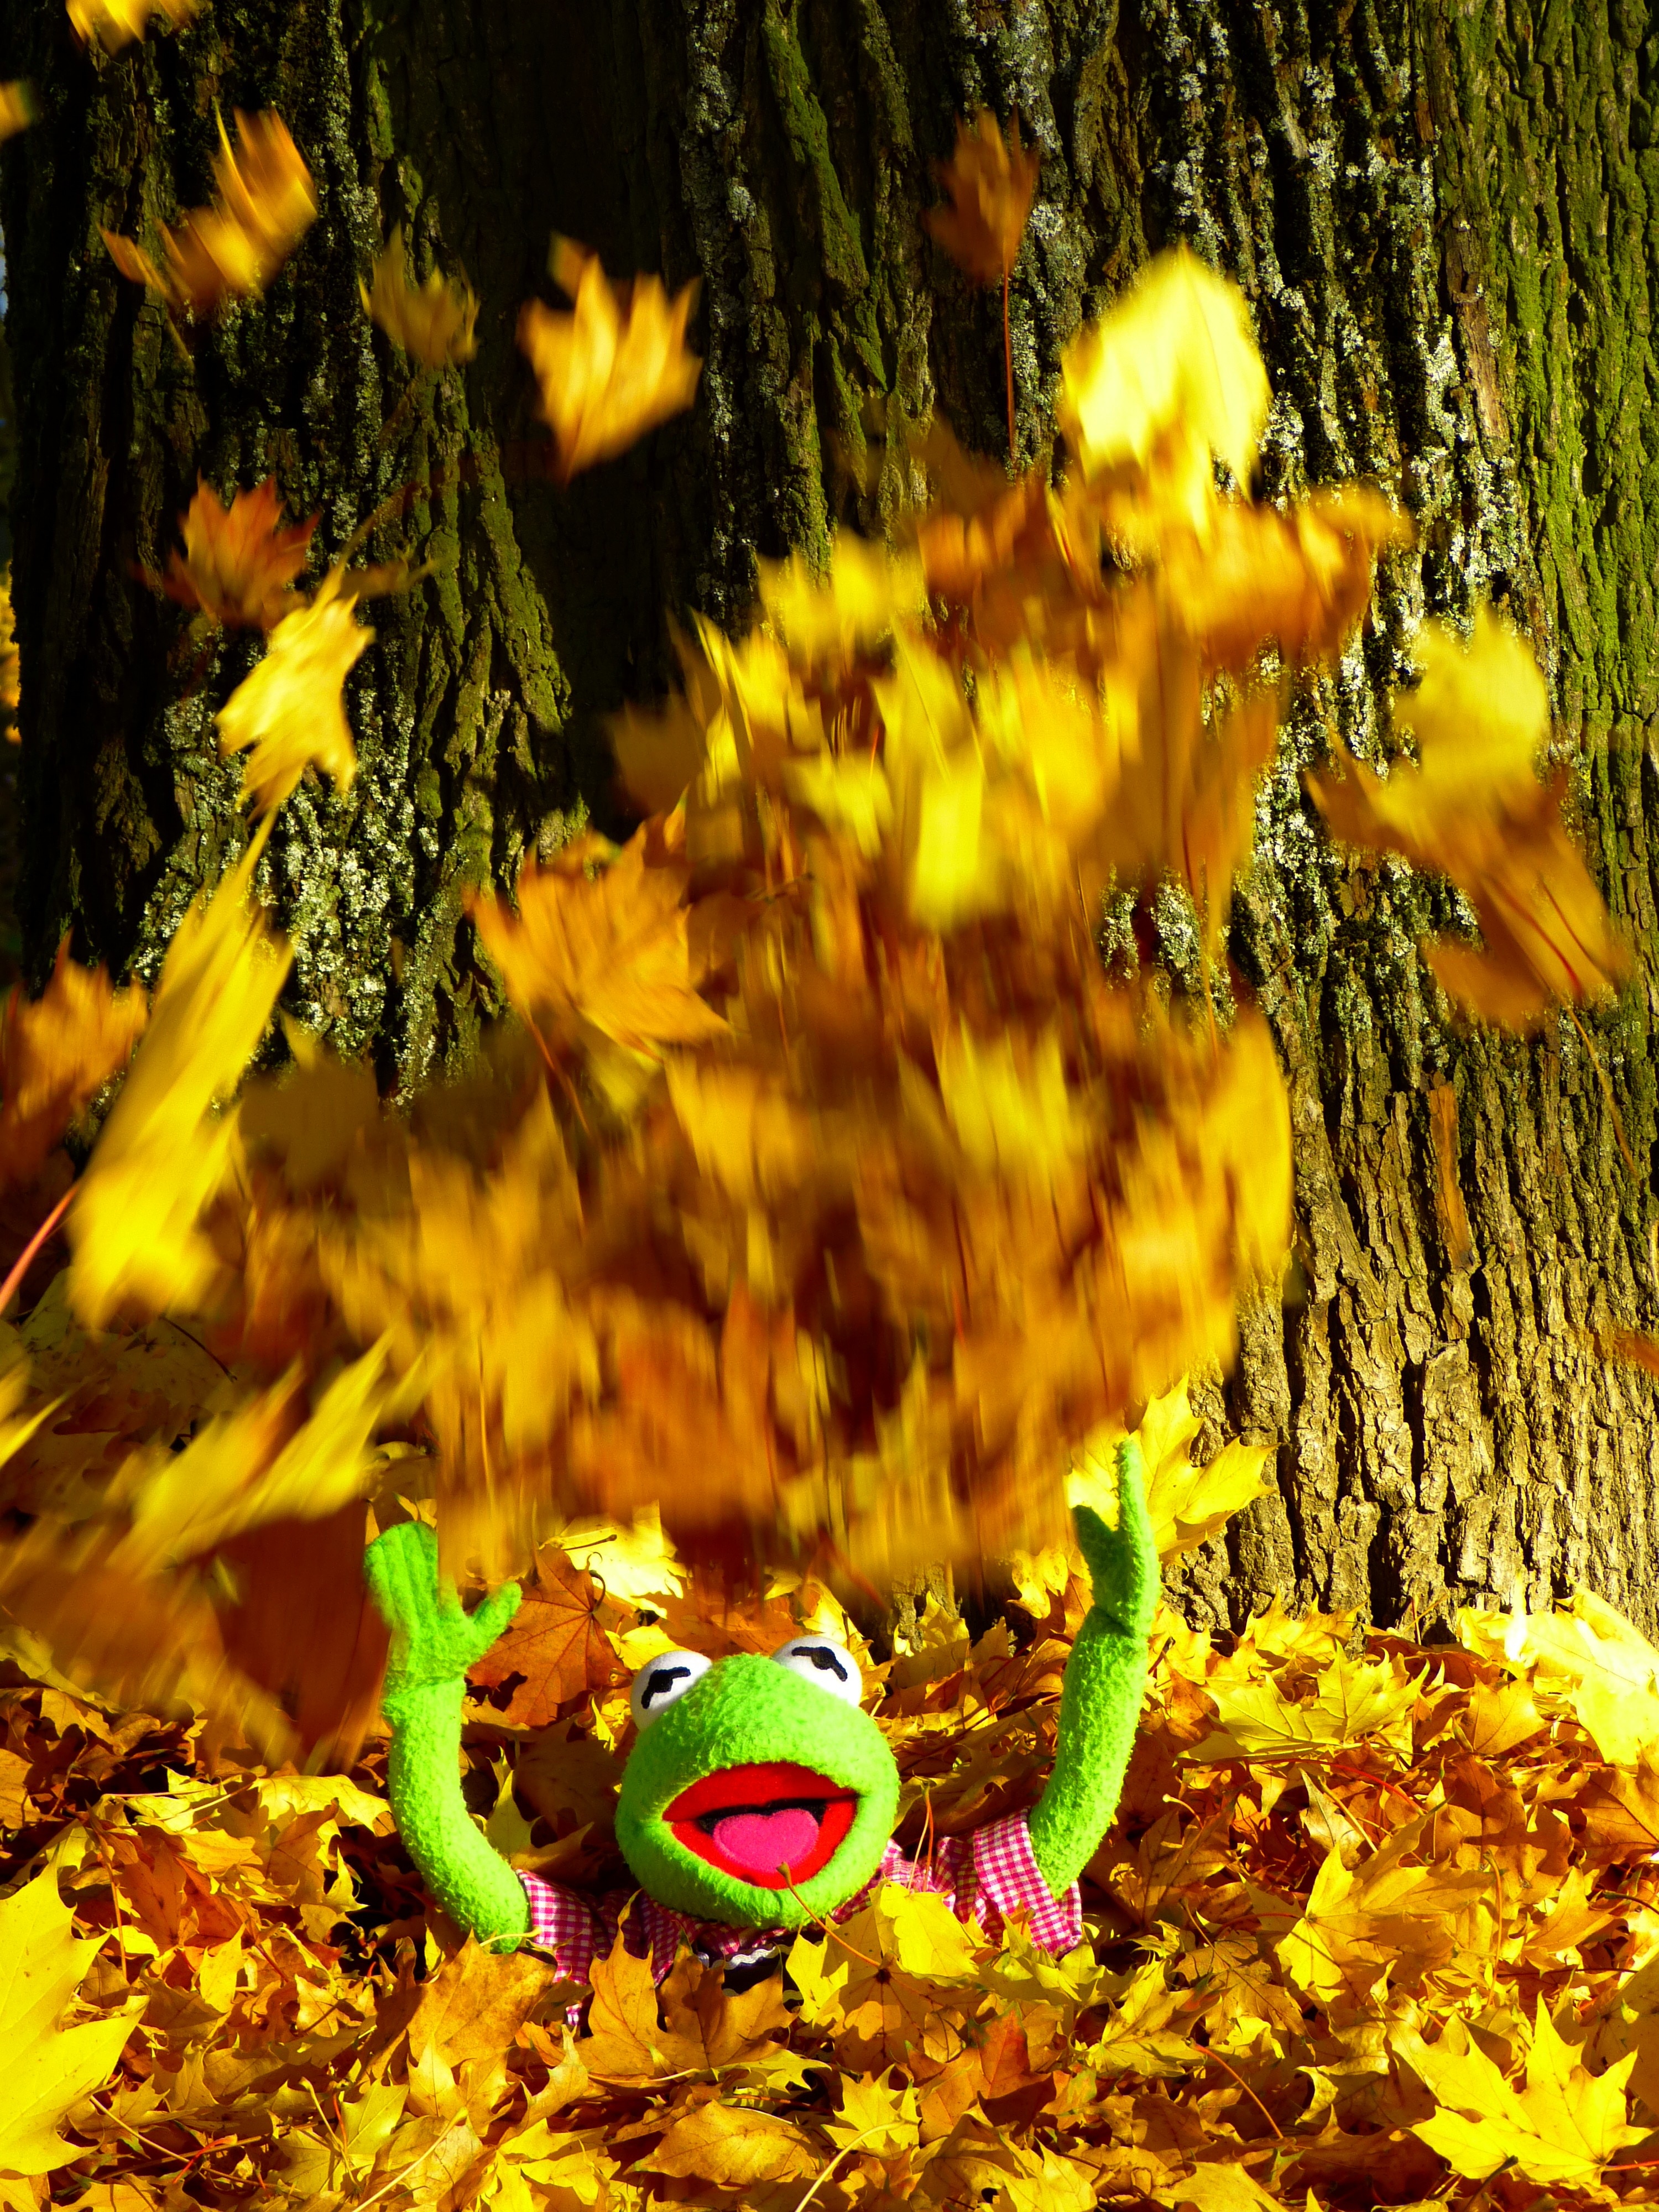 kermit the frog on brown leaves